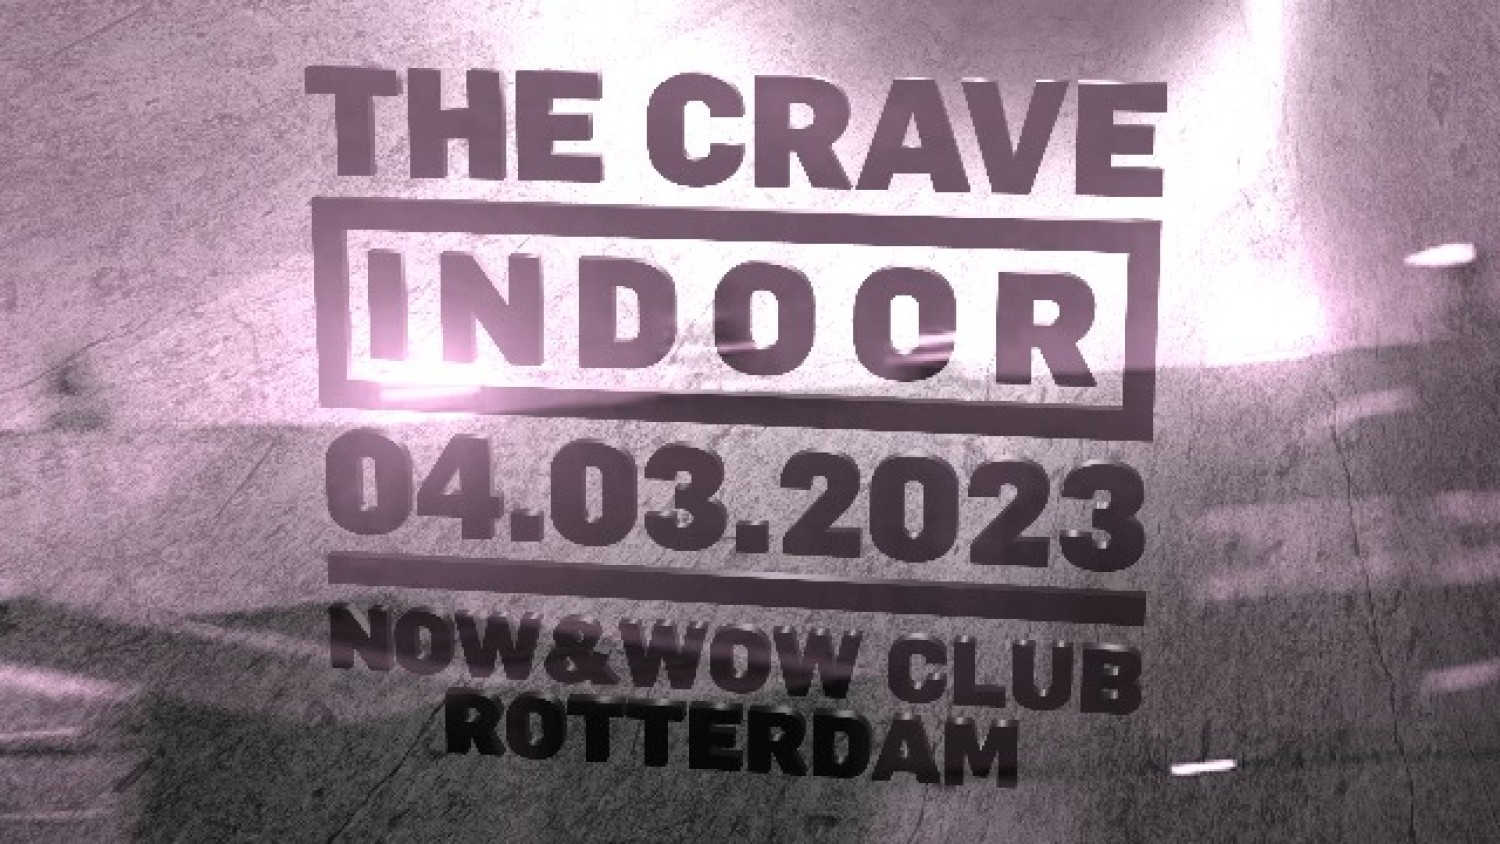 The Crave Indoor